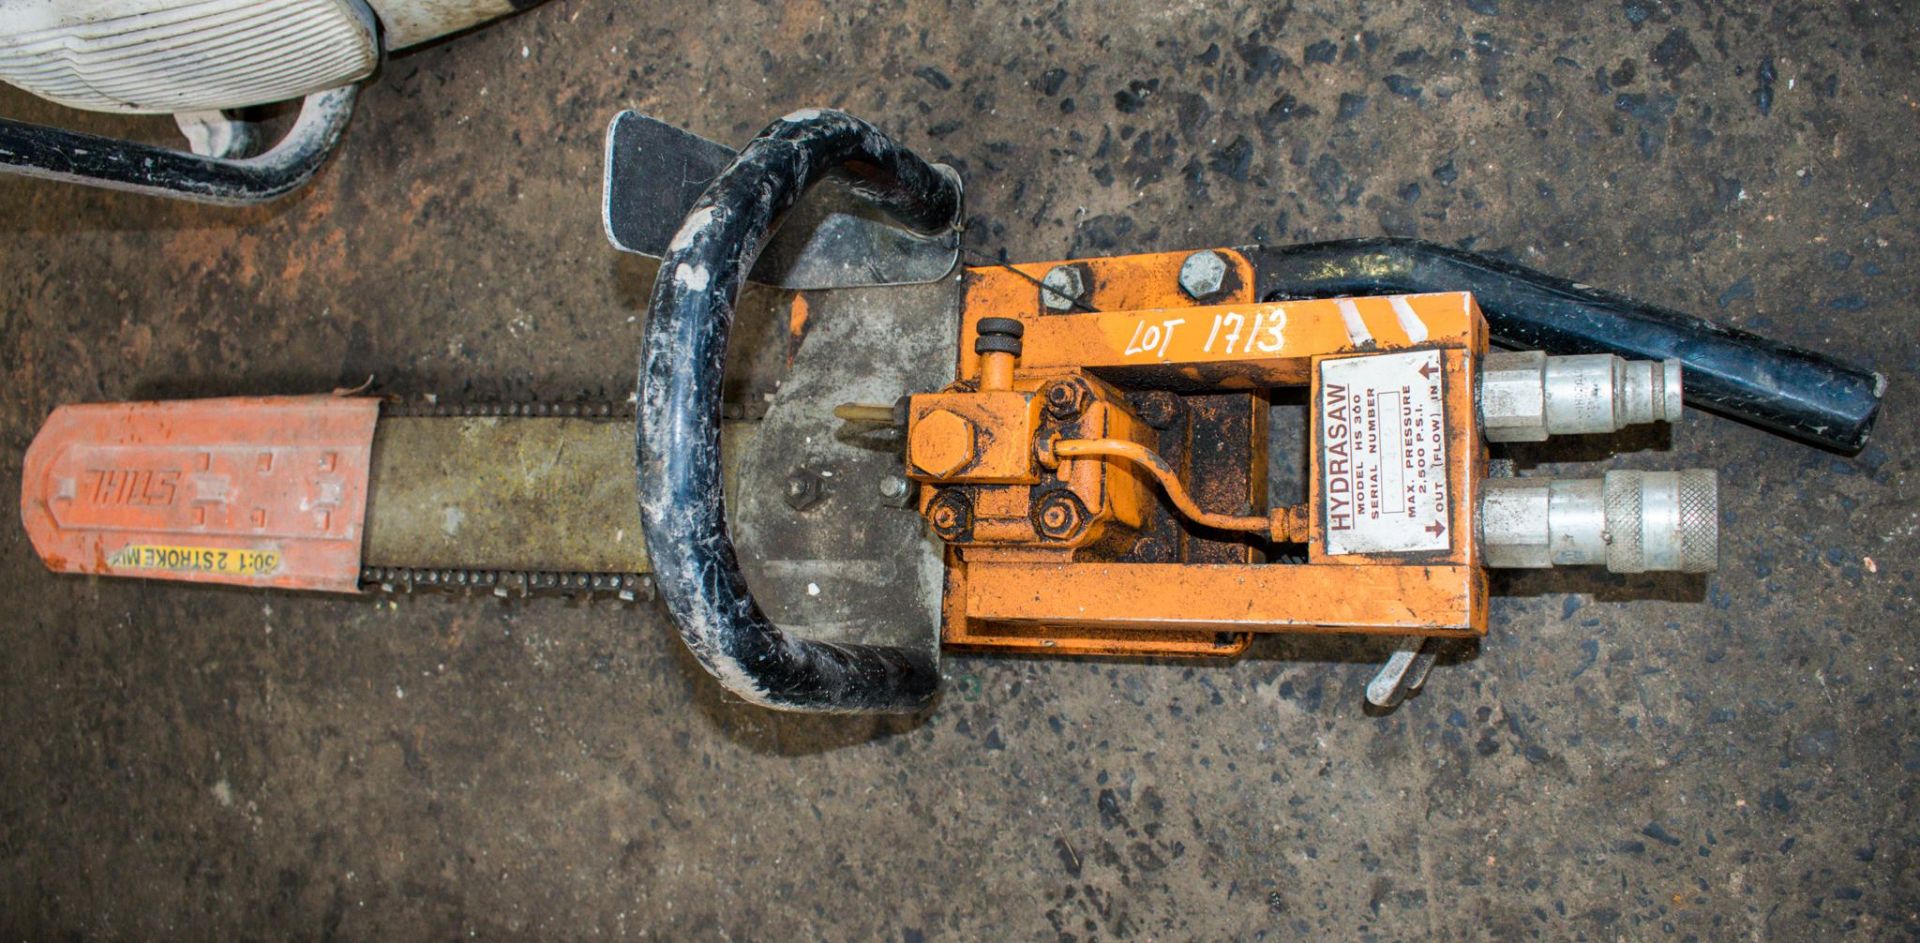 Hydrosaw hydraulic chainsaw